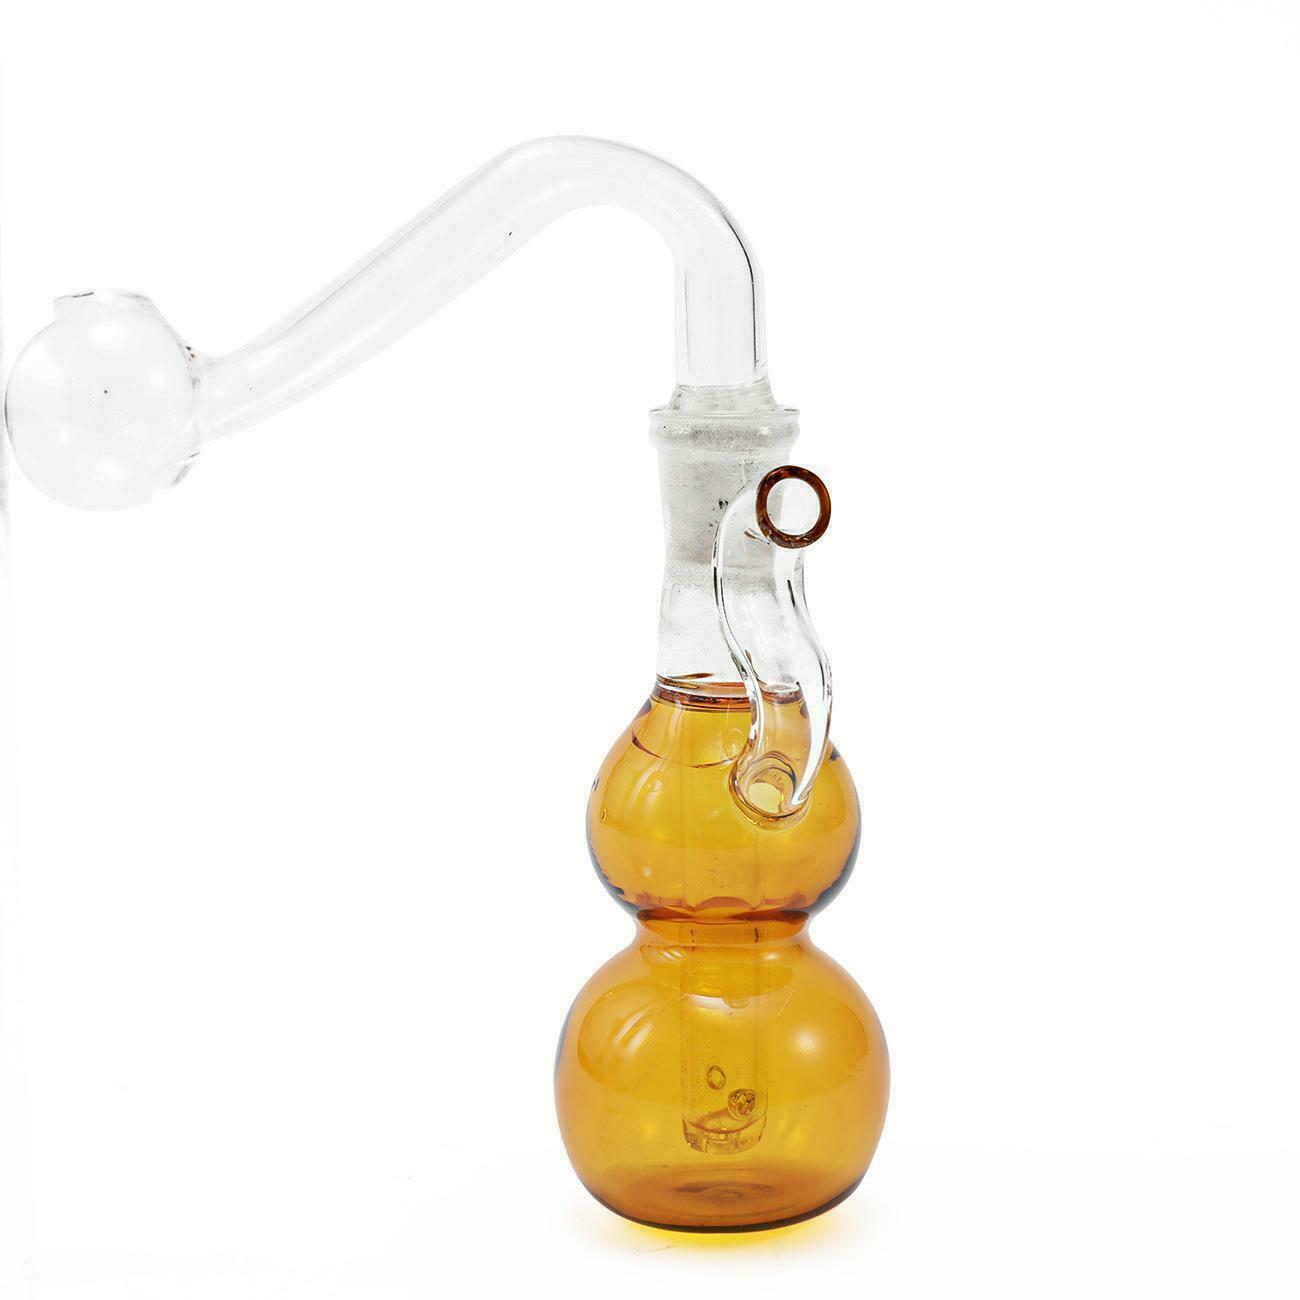 7.6cm 3 inch Mini Gourd Hookah Water Glass Bong Smoking Pipes Glassware Shisha Tobacco Bottle